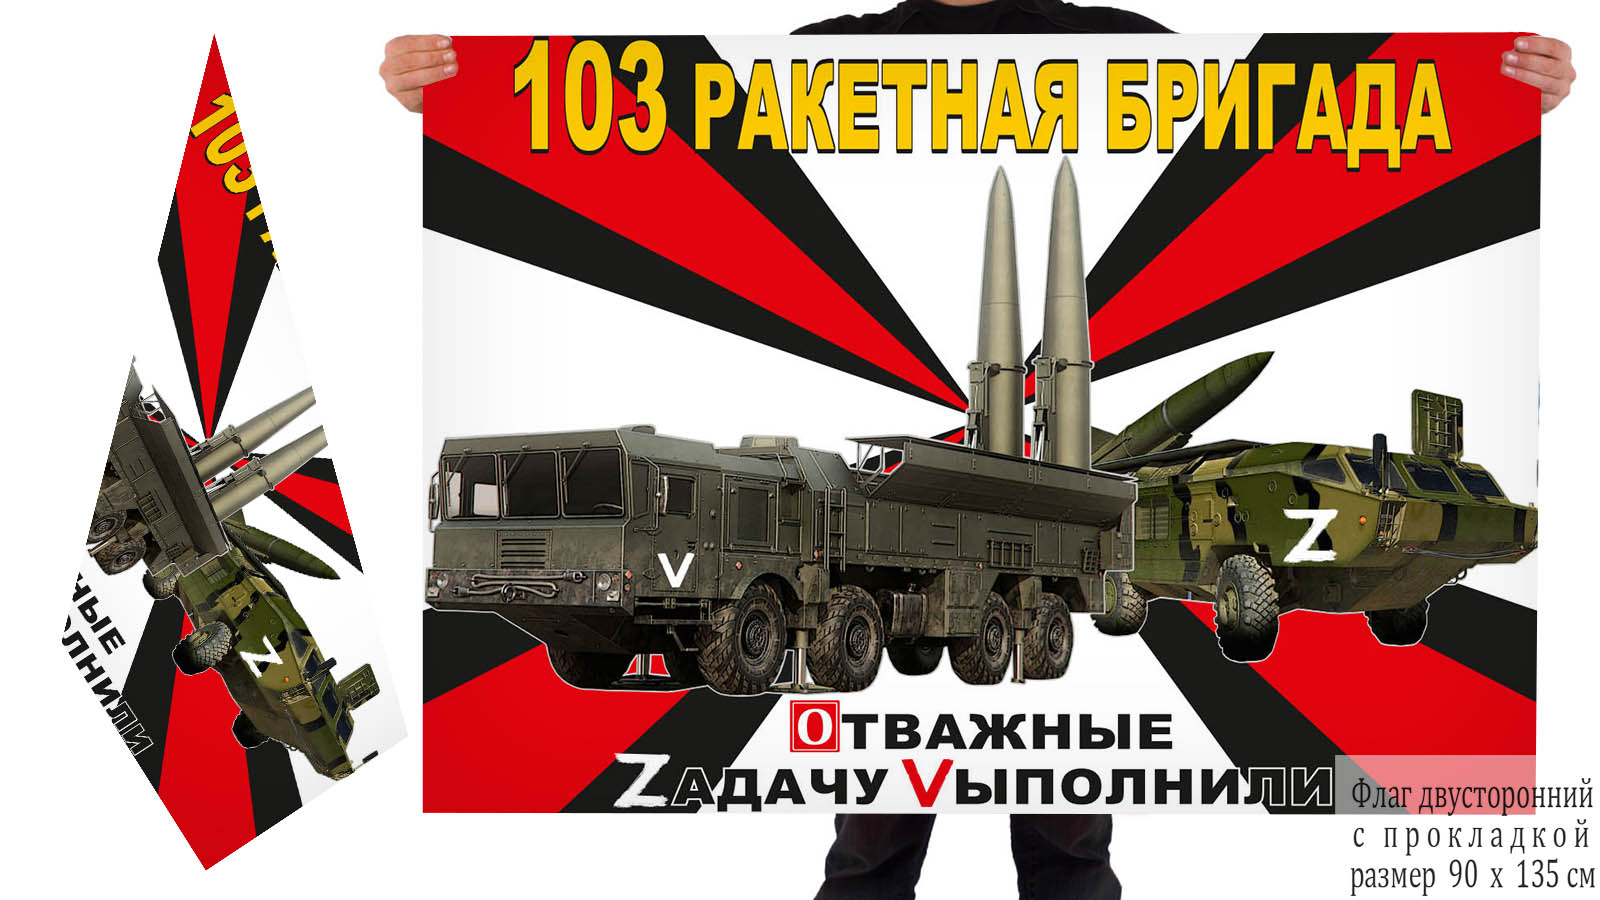 Двусторонний флаг 103 Ракетной бригады "Военная спецоперация Z"